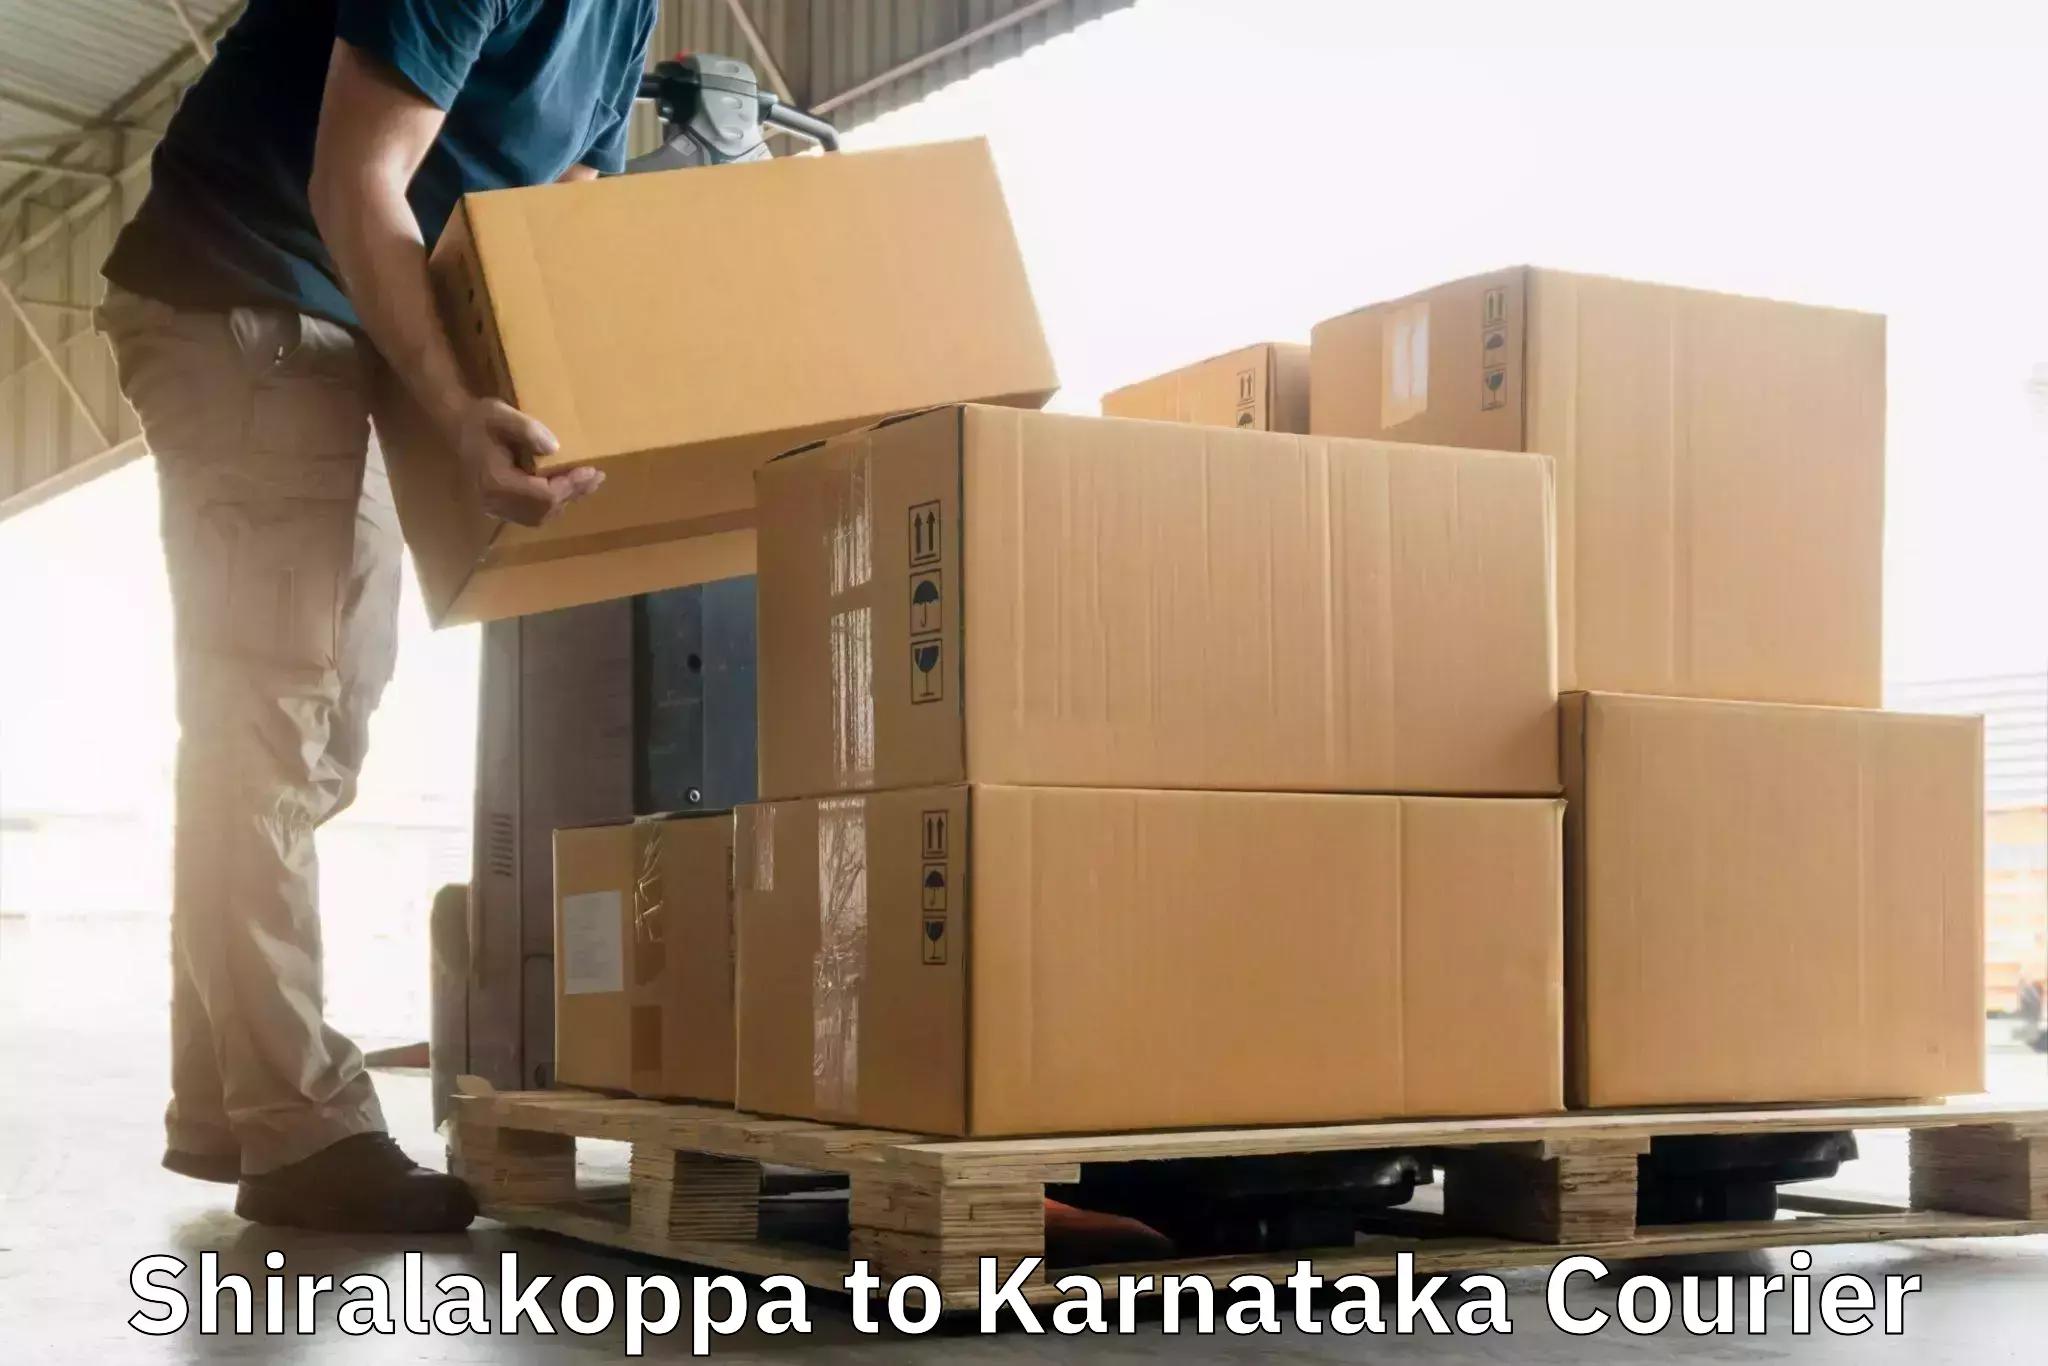 Expedited shipping methods Shiralakoppa to Karnataka